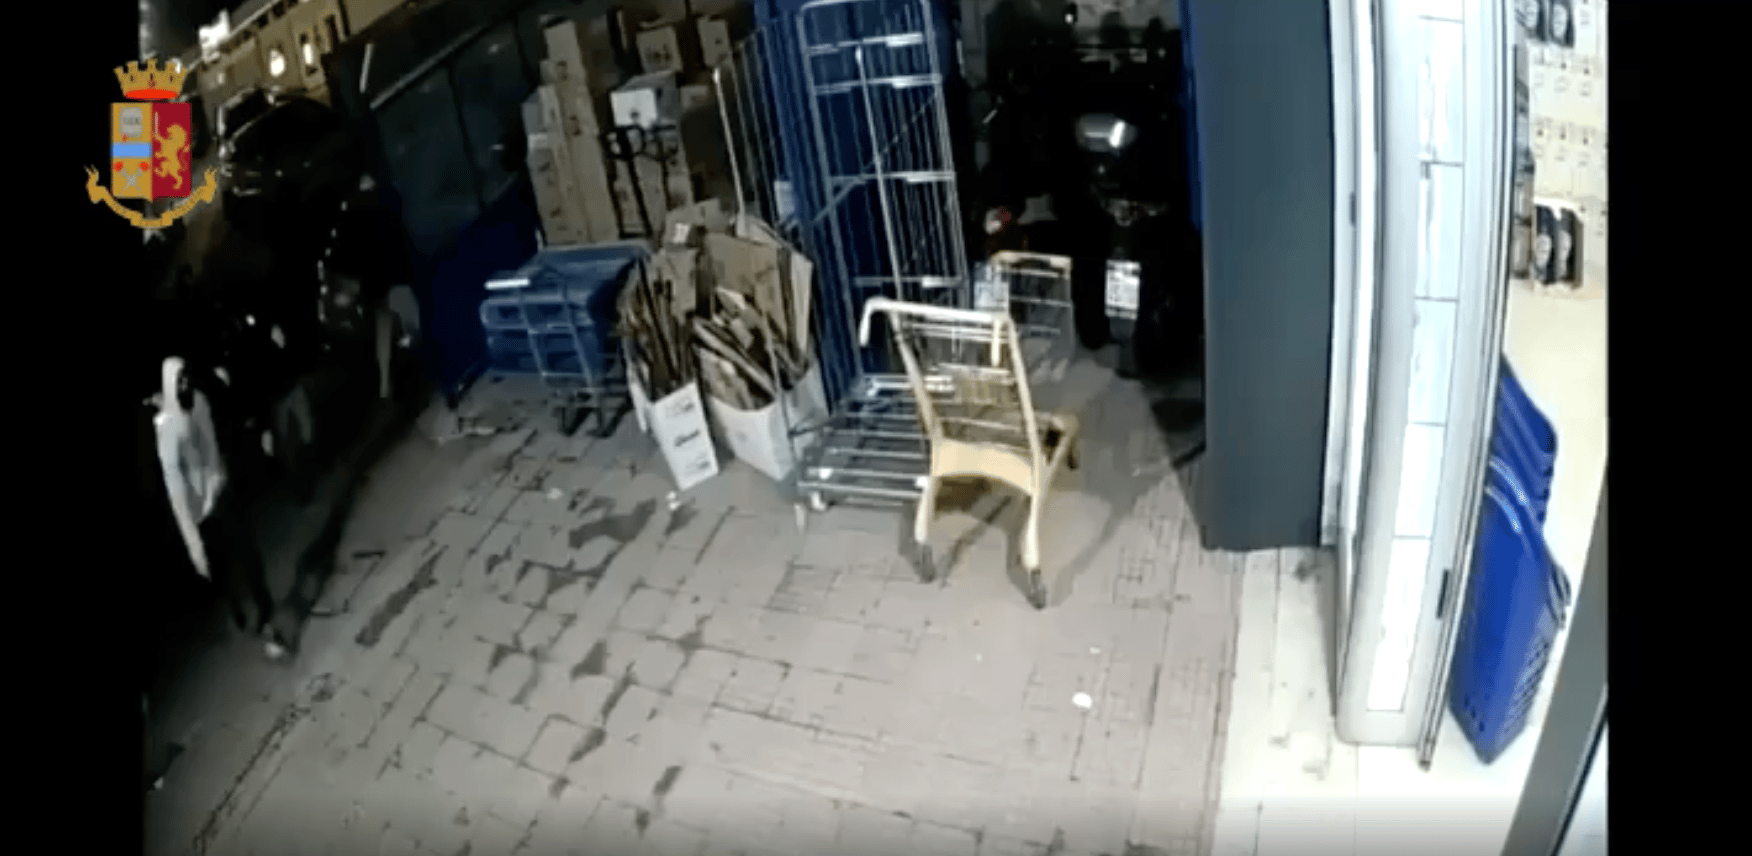 Palermo, rapina in un negozio: due giovani arrestati all’uscita, due i ricercati – VIDEO